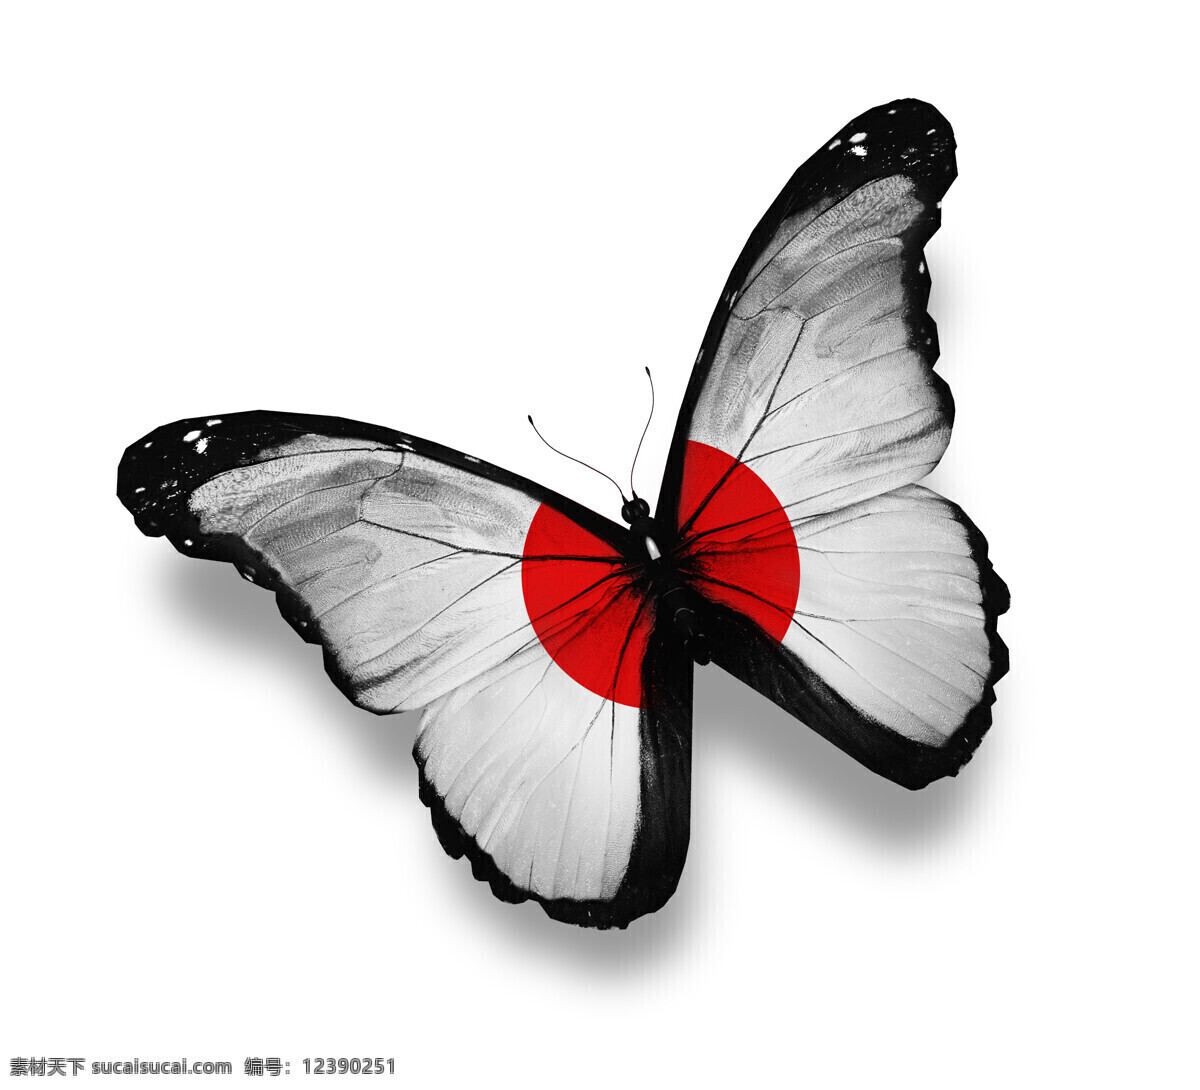 日本 国旗 蝴蝶 日本国旗 美丽蝴蝶 漂亮蝴蝶 昆虫动物 国旗图片 生活百科